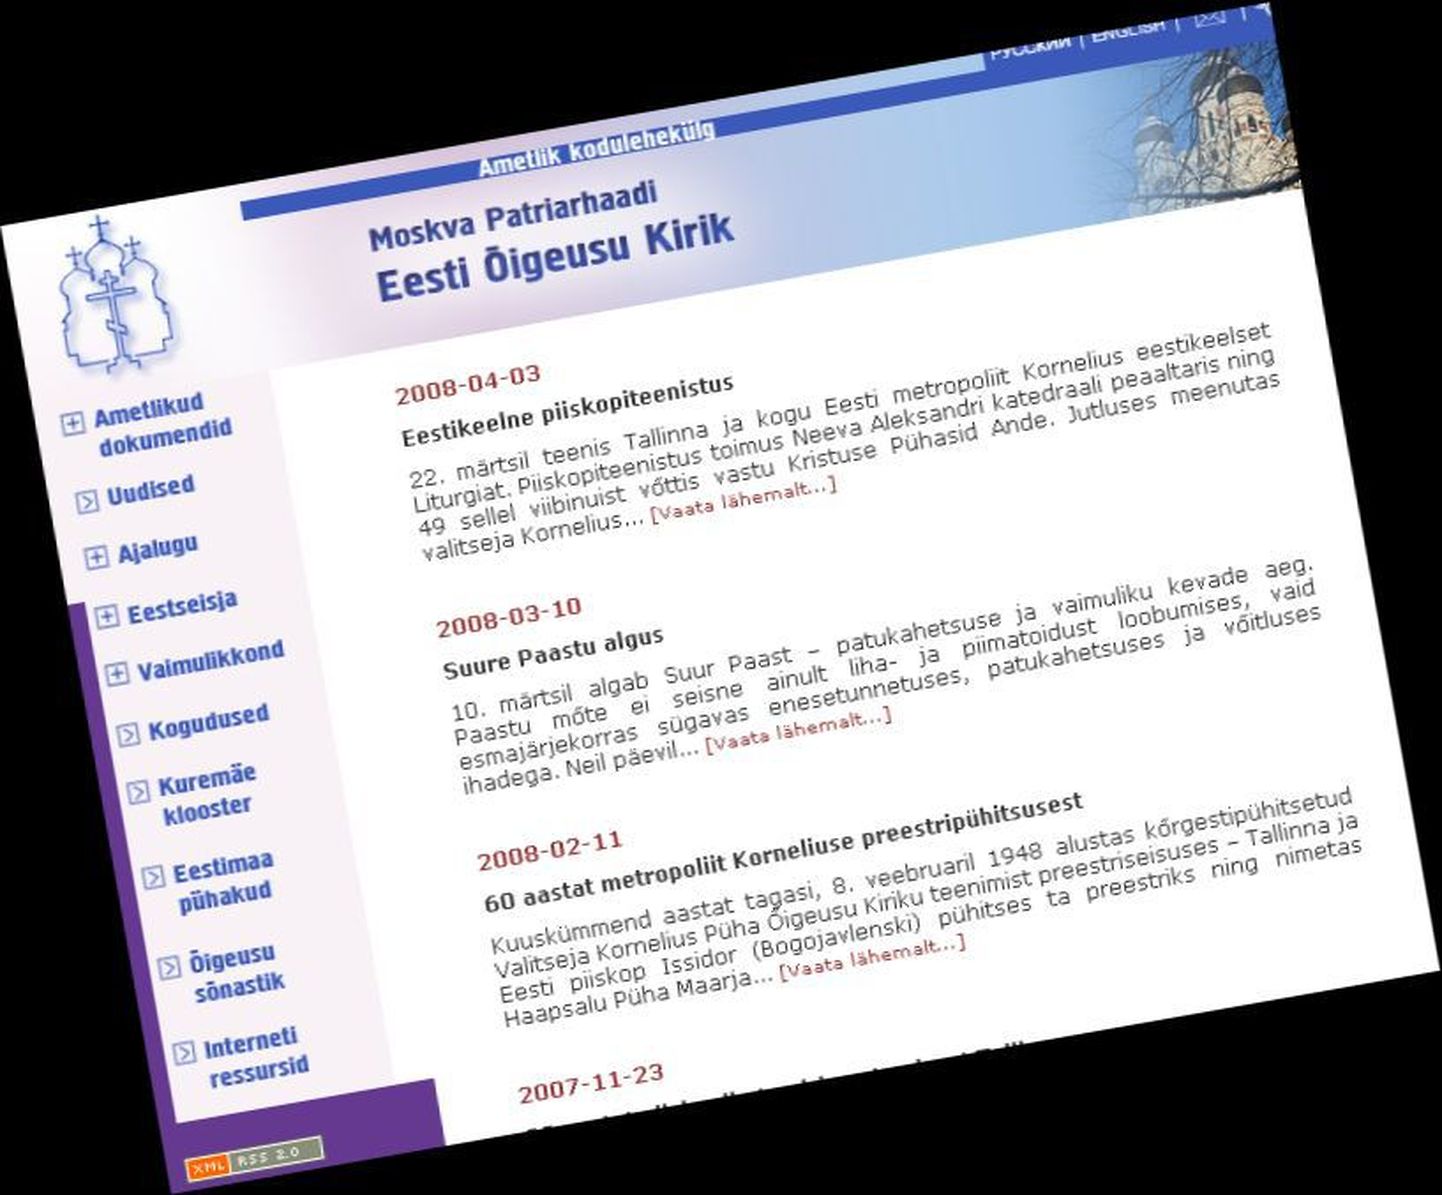 Moskva Patriarhaadi Eesti Õigeusu Kiriku kodulehekülg internetis sattus häkkerite ohvriks.